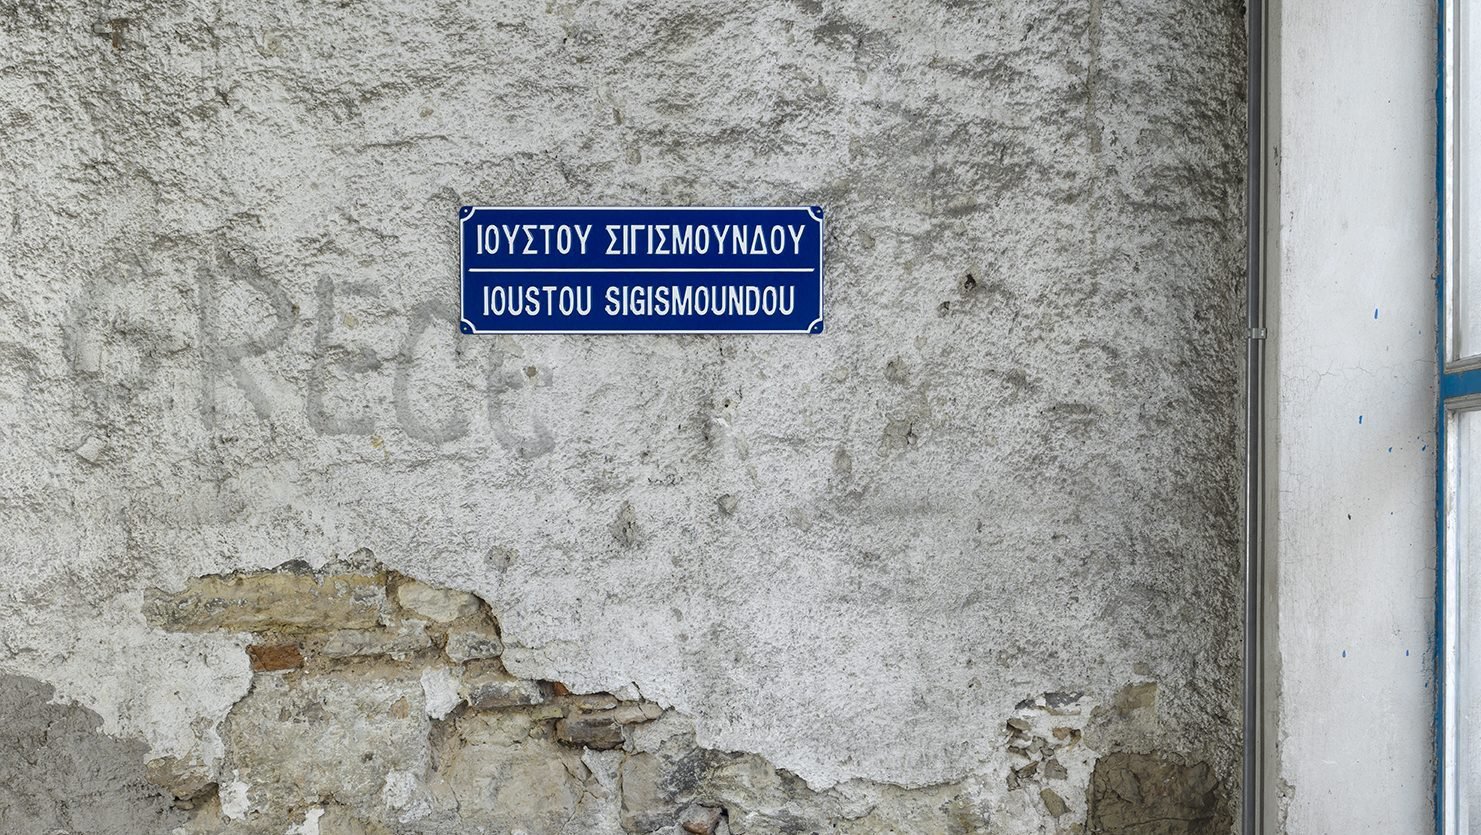 Christodoulos Panayiotou, Ioustos Sigismoundos, street sign, 60 x 25 cm (23 5/8 x 9 7/8 in), 2015